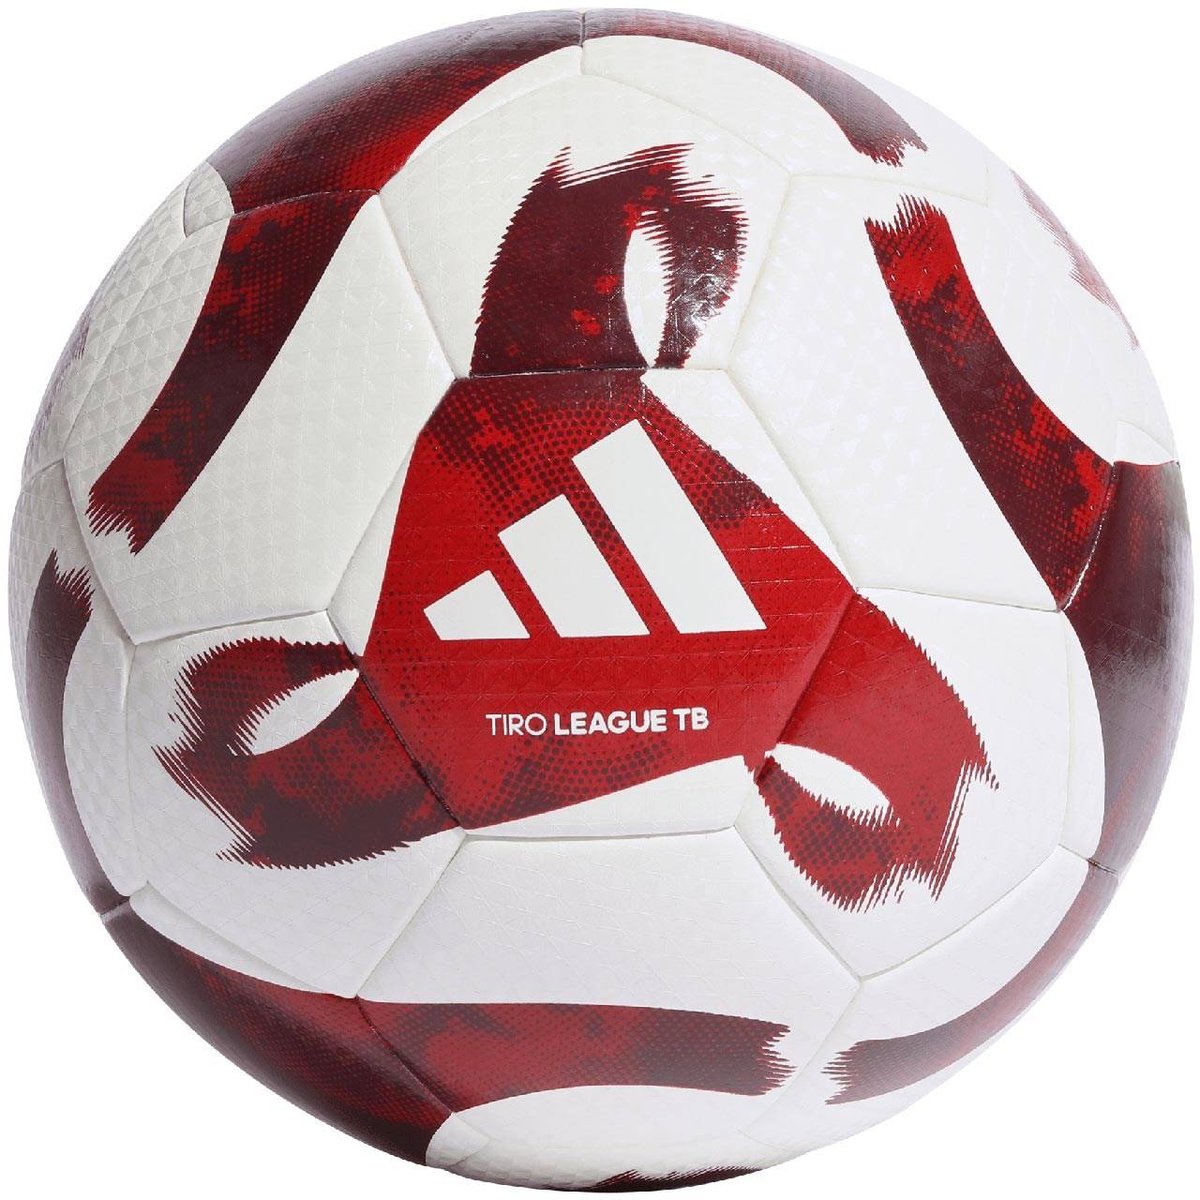 Zdjęcia - Pozostałe akcesoria Adidas Piłka Nożna  Tiro League Thermally Bonded Biało-Czerwona Hz1294-5 